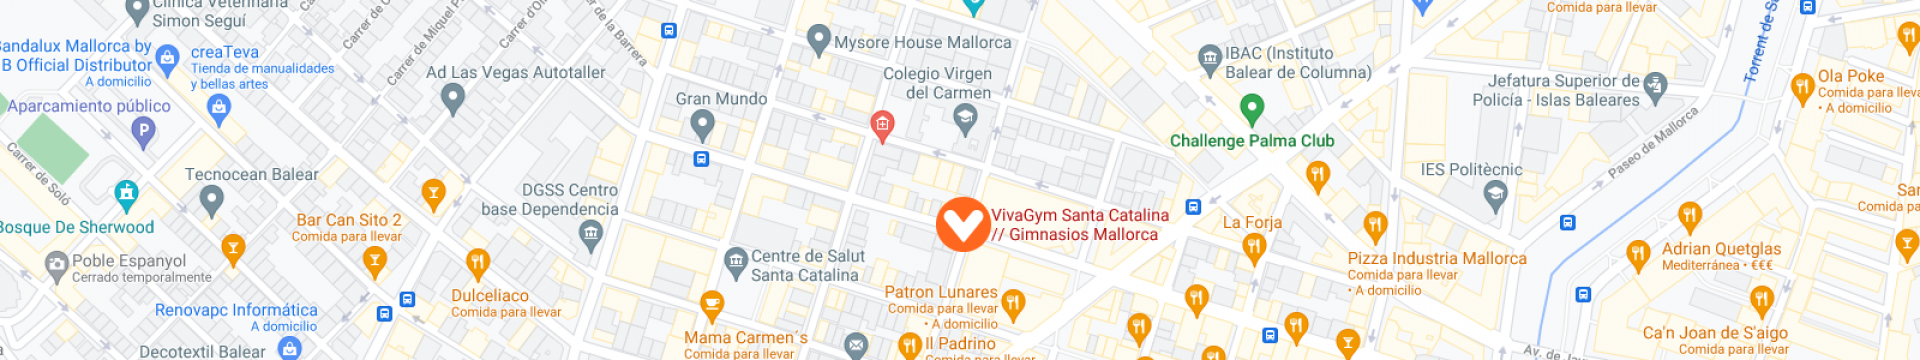 mapa vivagym santa catalina